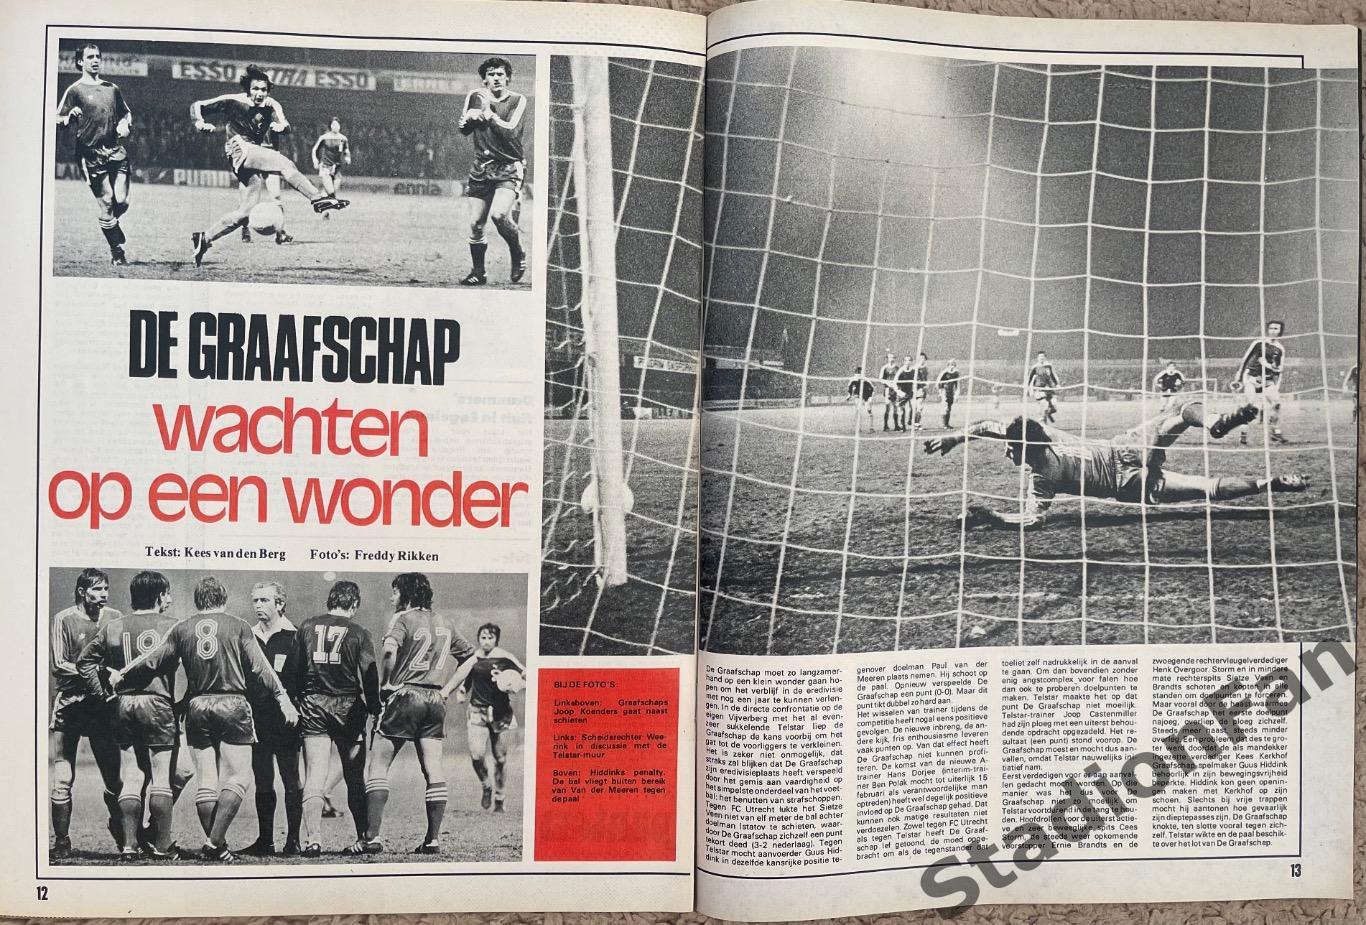 Журнал Voetbal nr.7 - 1977 год. 5